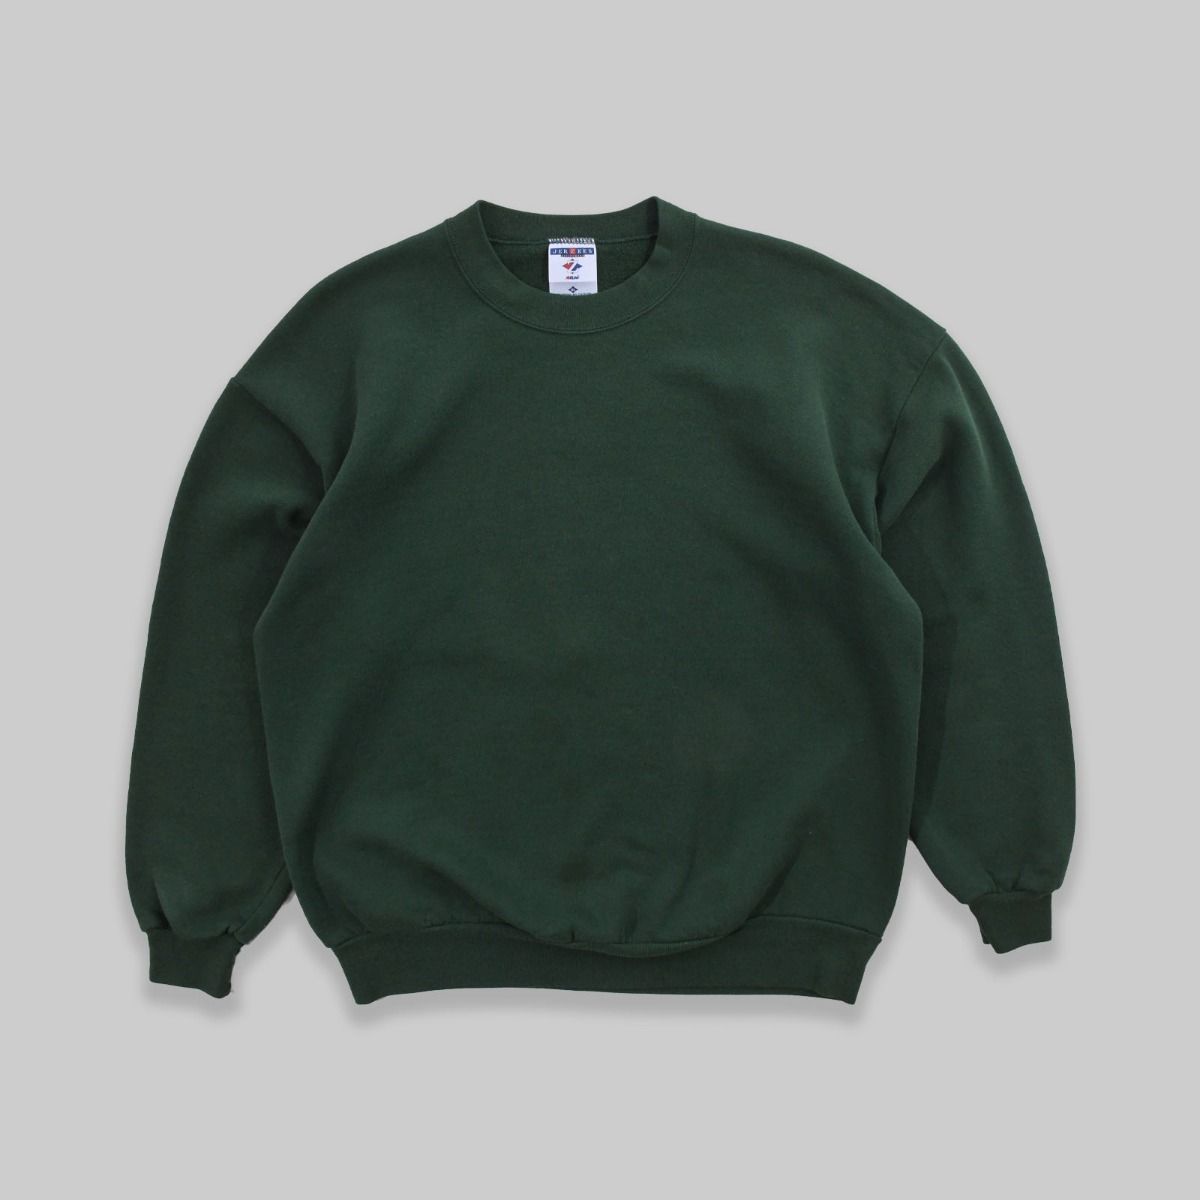 Jerzees Late 1990s Blank Green Sweatshirt